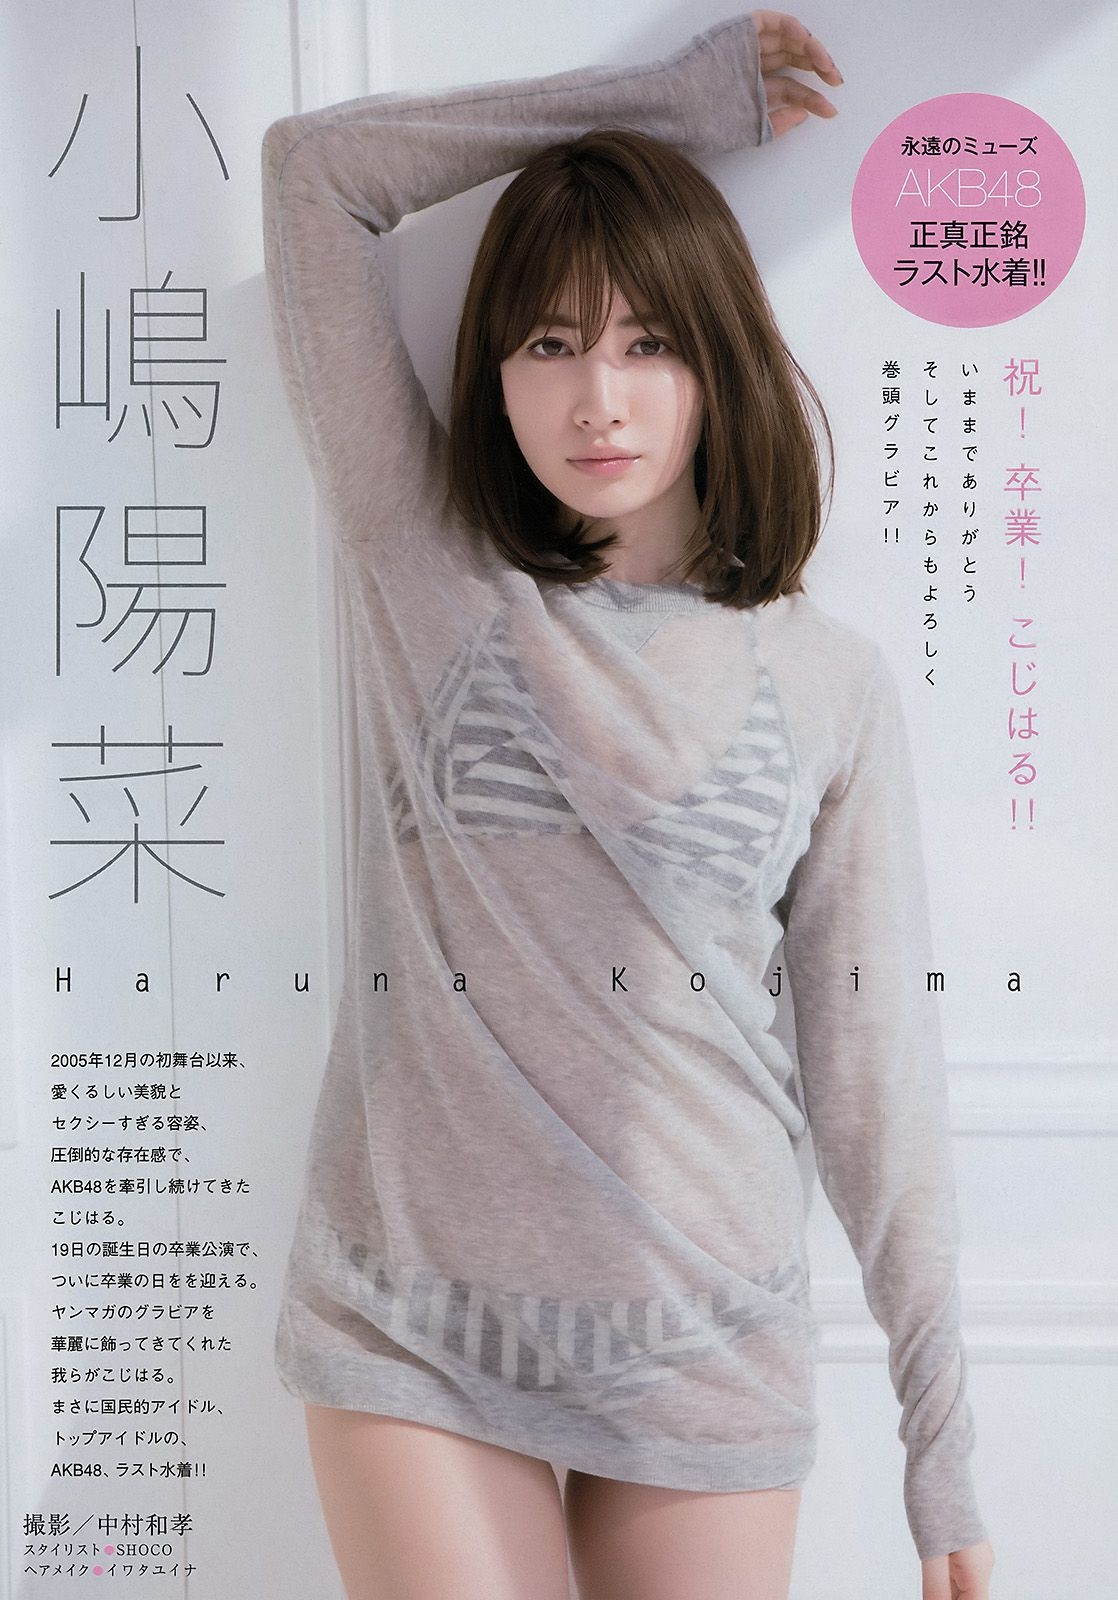 [Young Magazine] 2017年No.20 小嶋陽菜 ユミ?W?クライン  第0张